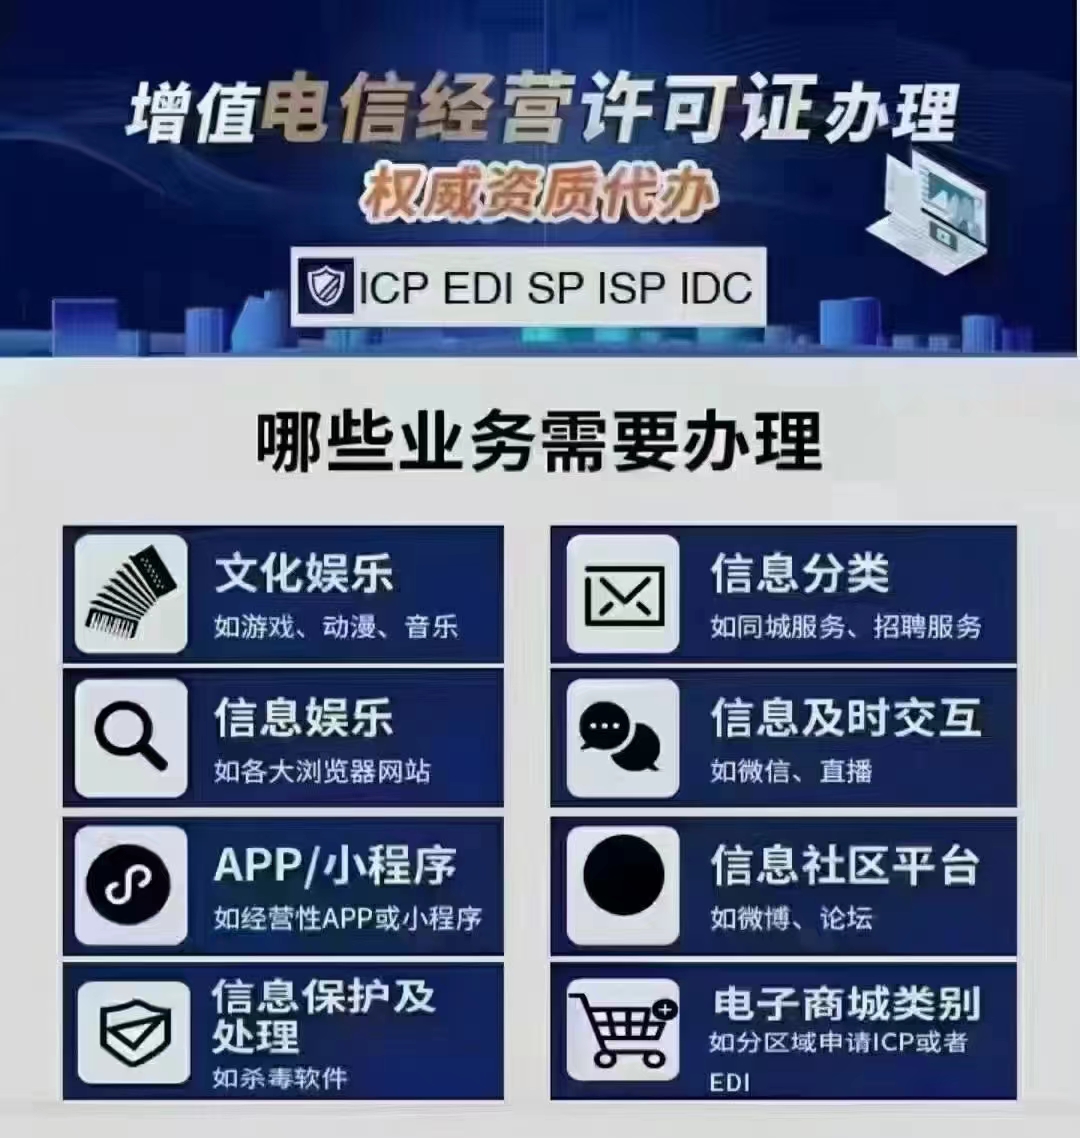 逐项申请清单北京市西城区ICP经营许可证办理指南